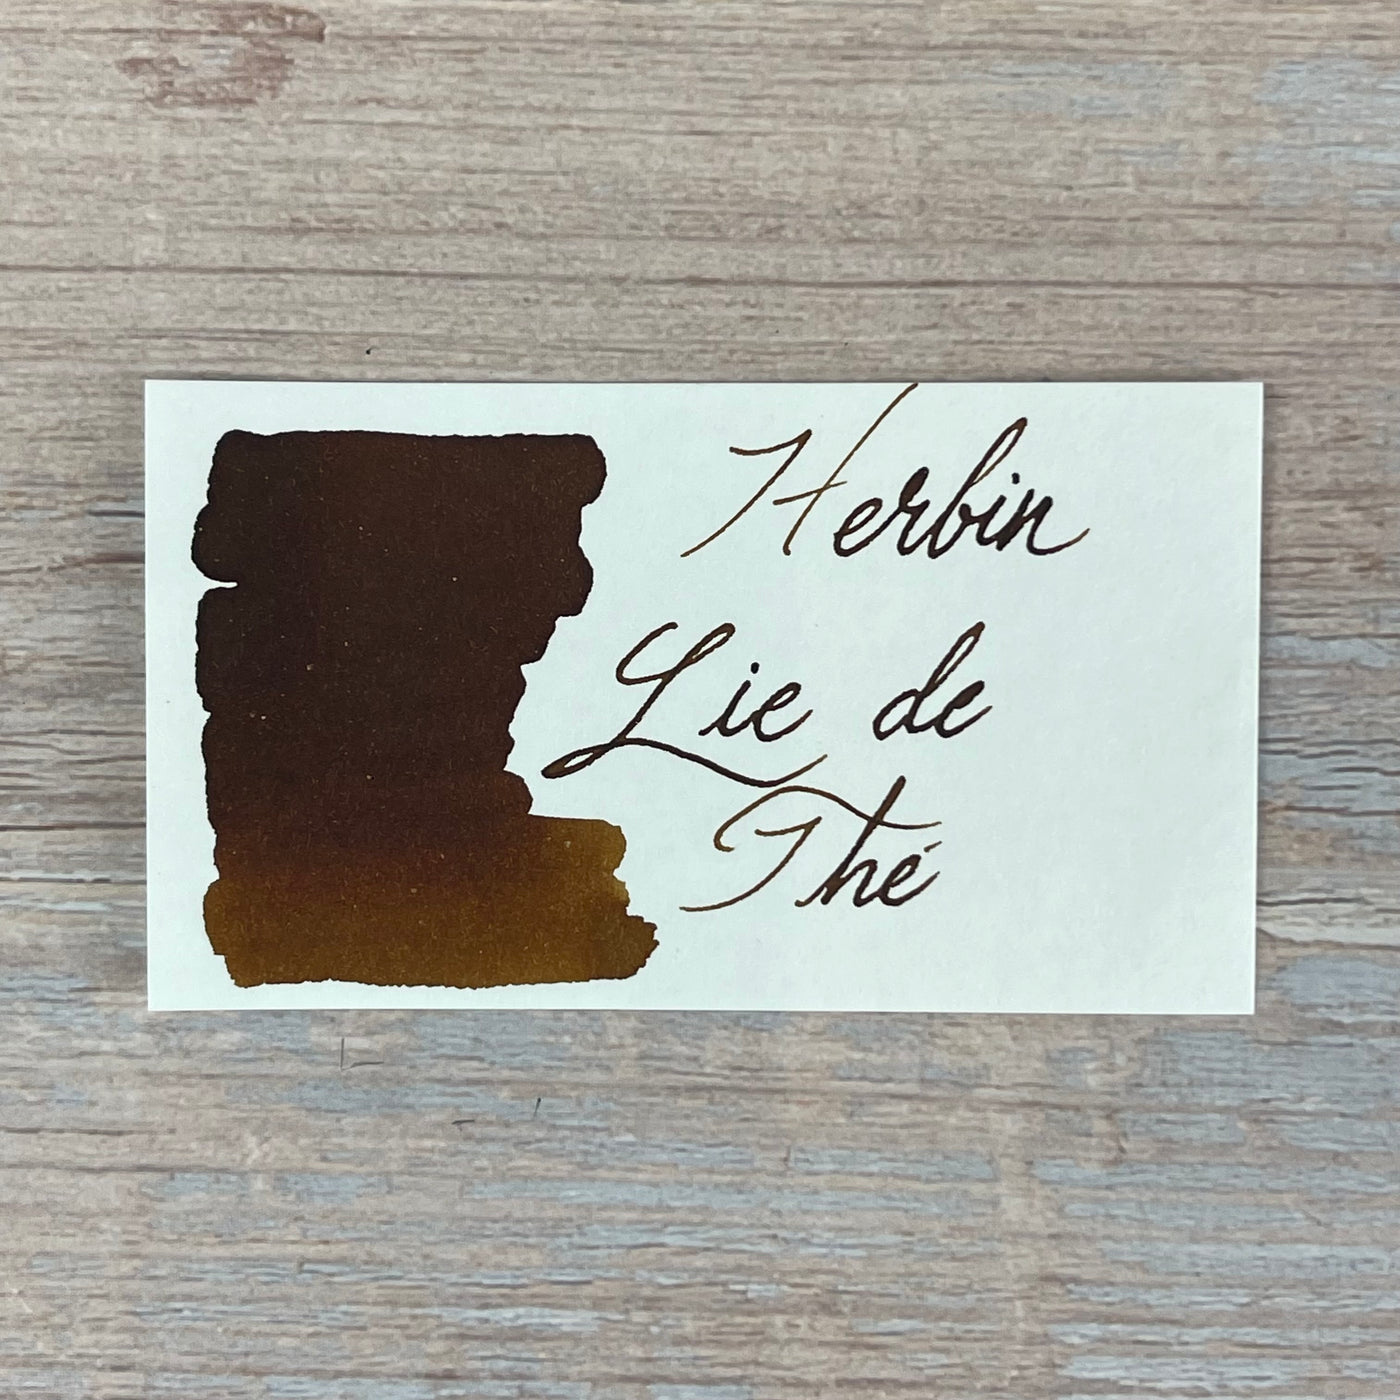 Jacques Herbin Lie de The - 30ml Bottled Ink